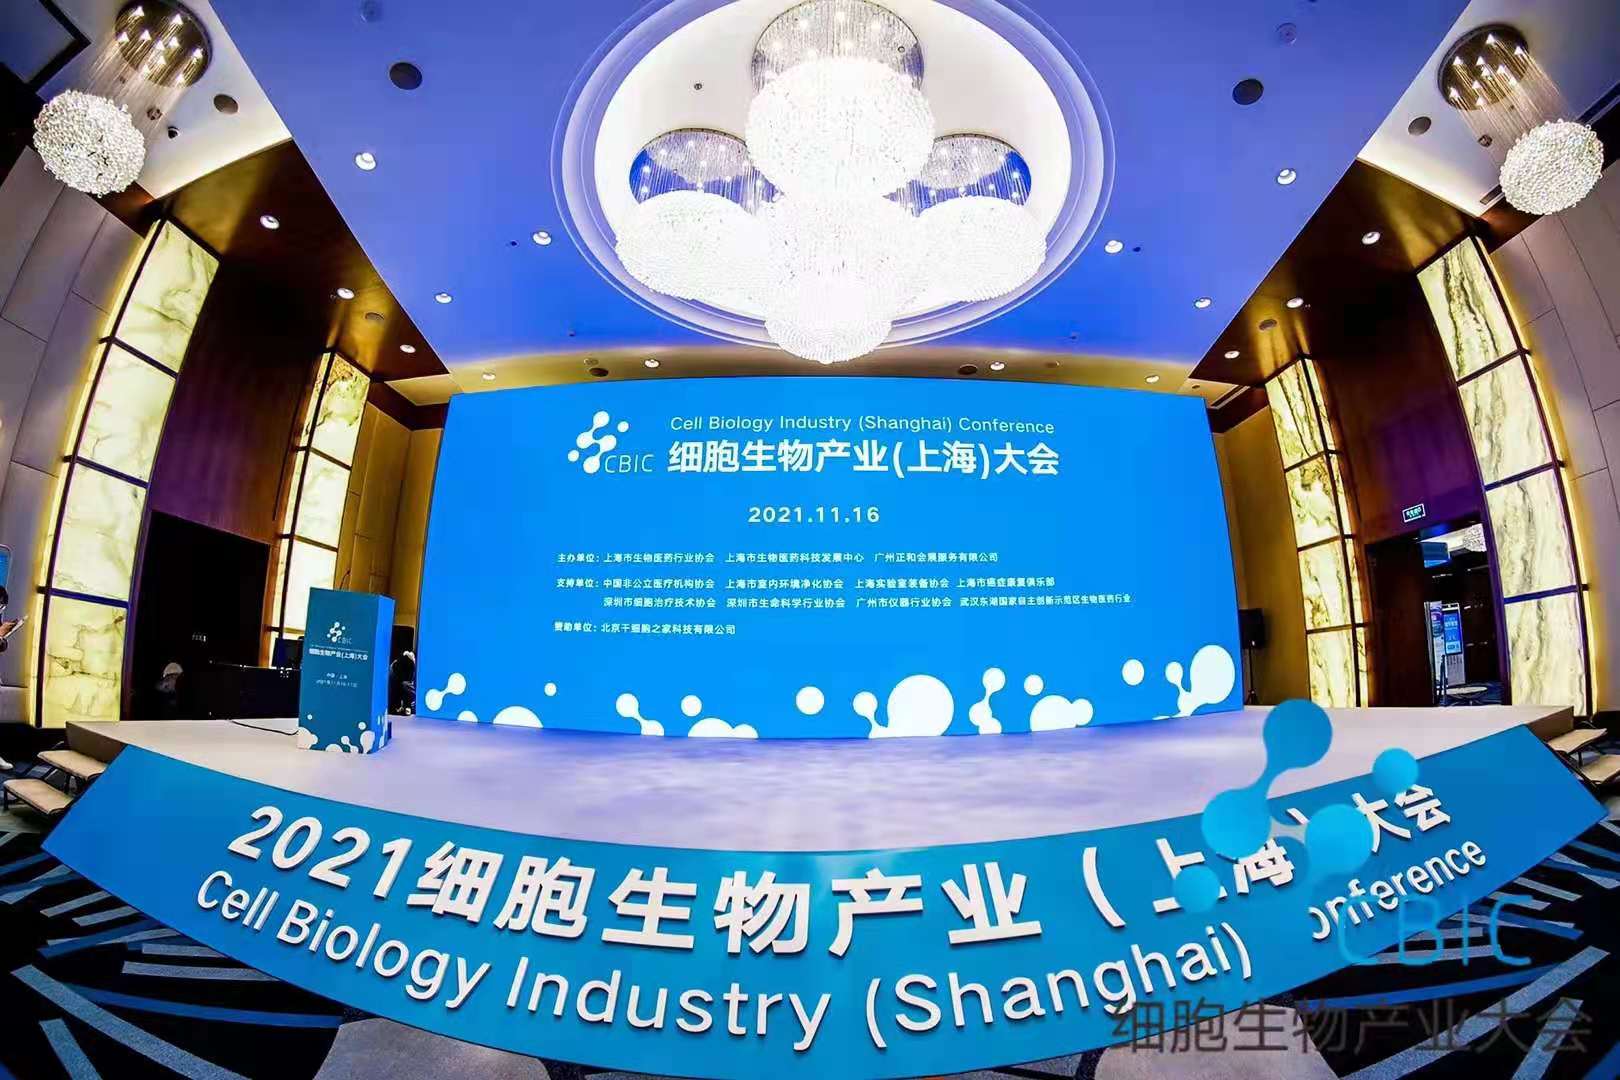 展会盛况 |2021细胞生物产业（上海）大会火热进行中，北纳生物带您直击现场盛况